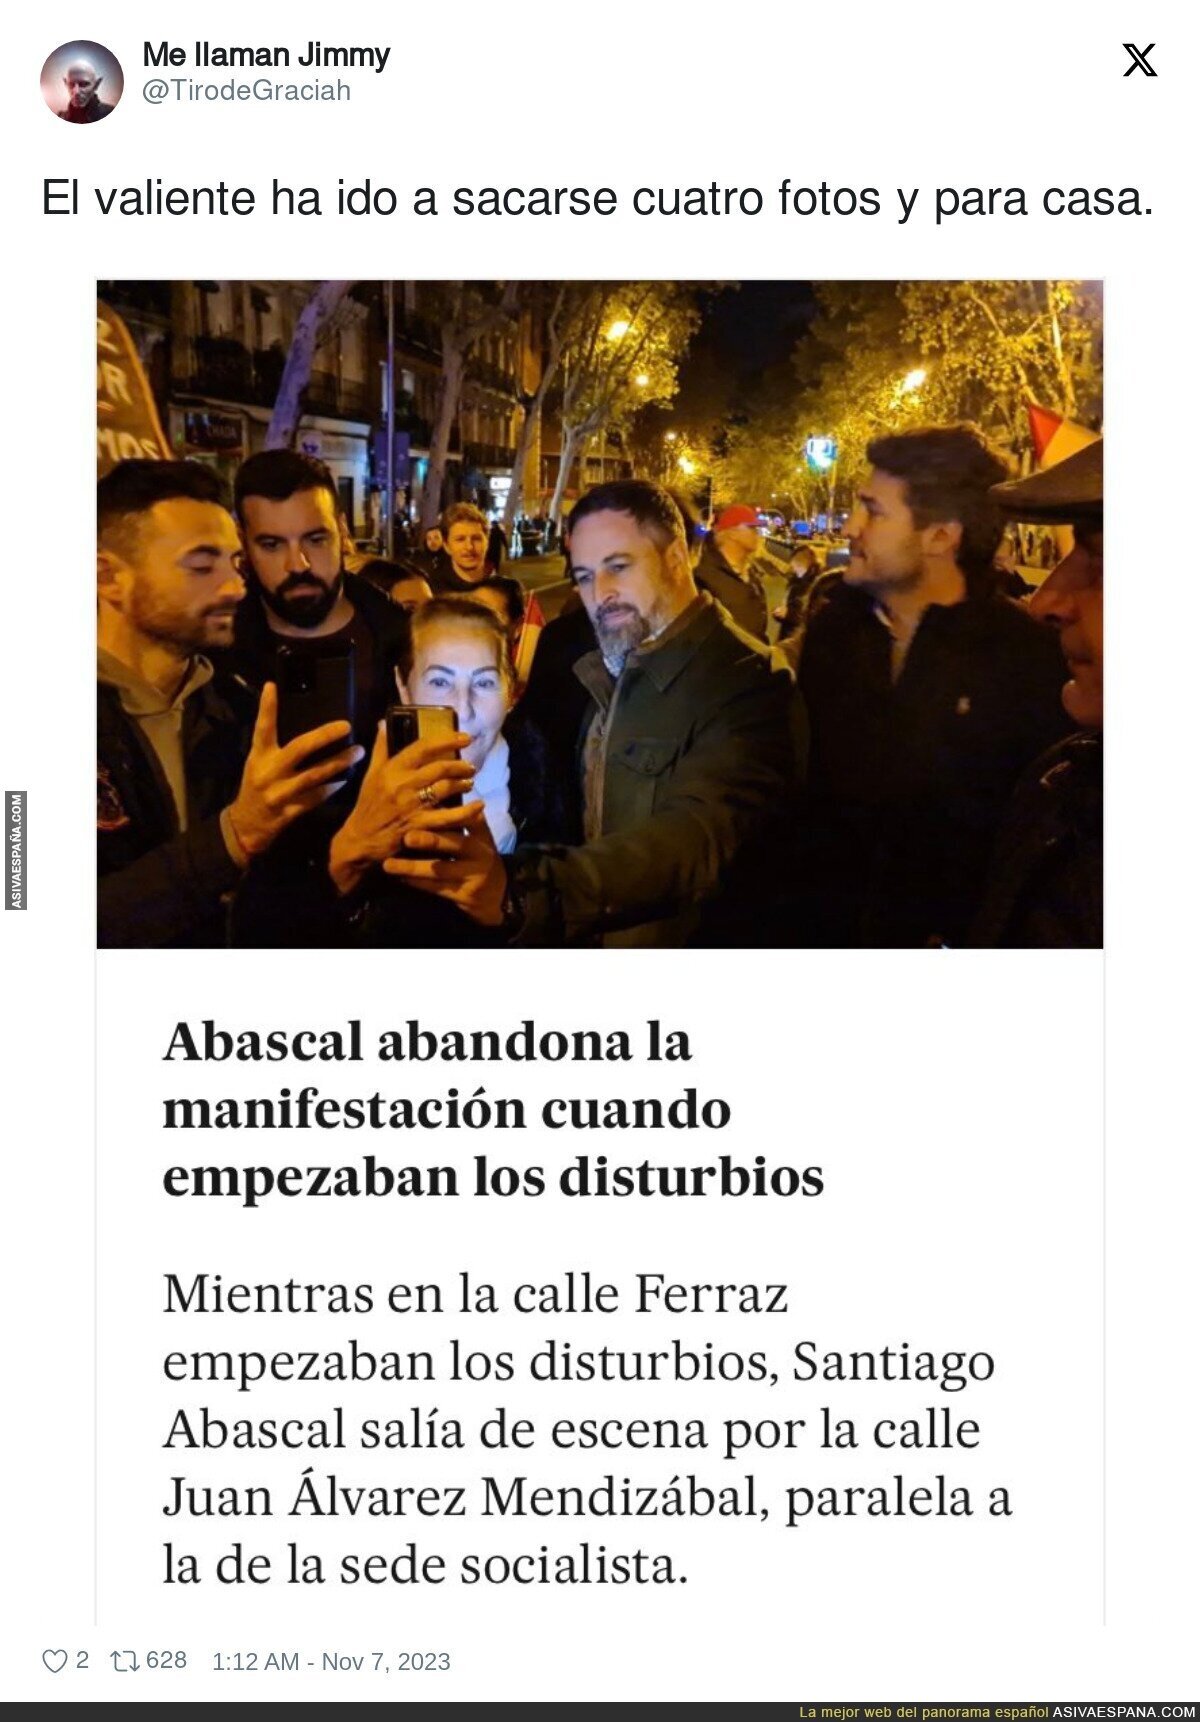 Santiago Abascal en cuanto ve el peligro se pira